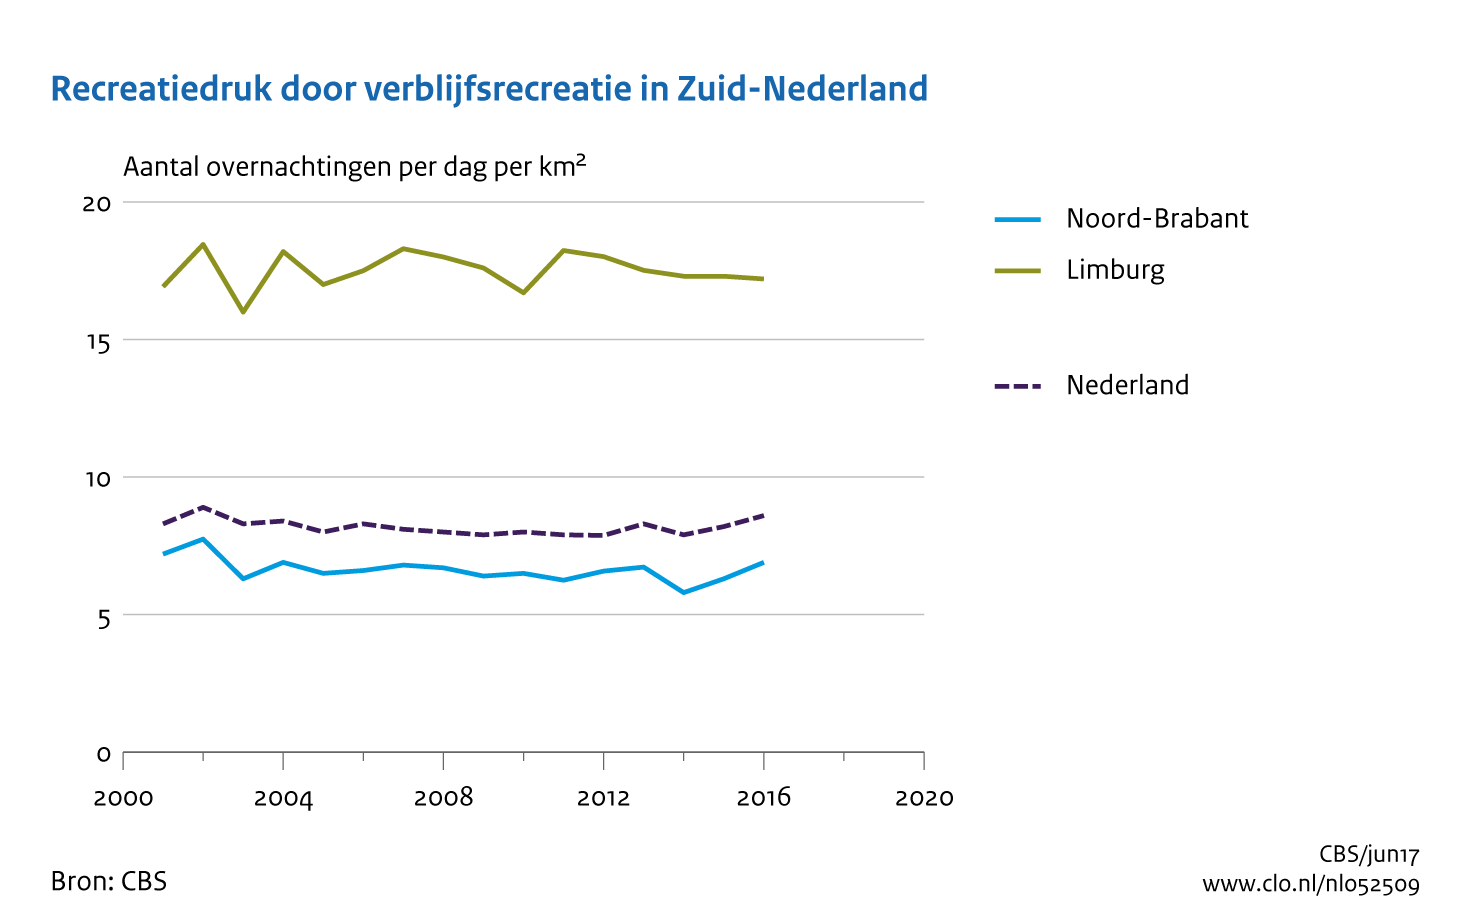 Figuur recreatiedruk door verblijfsrecreatie per provincie Zuid Nederland. In de rest van de tekst wordt deze figuur uitgebreider uitgelegd.